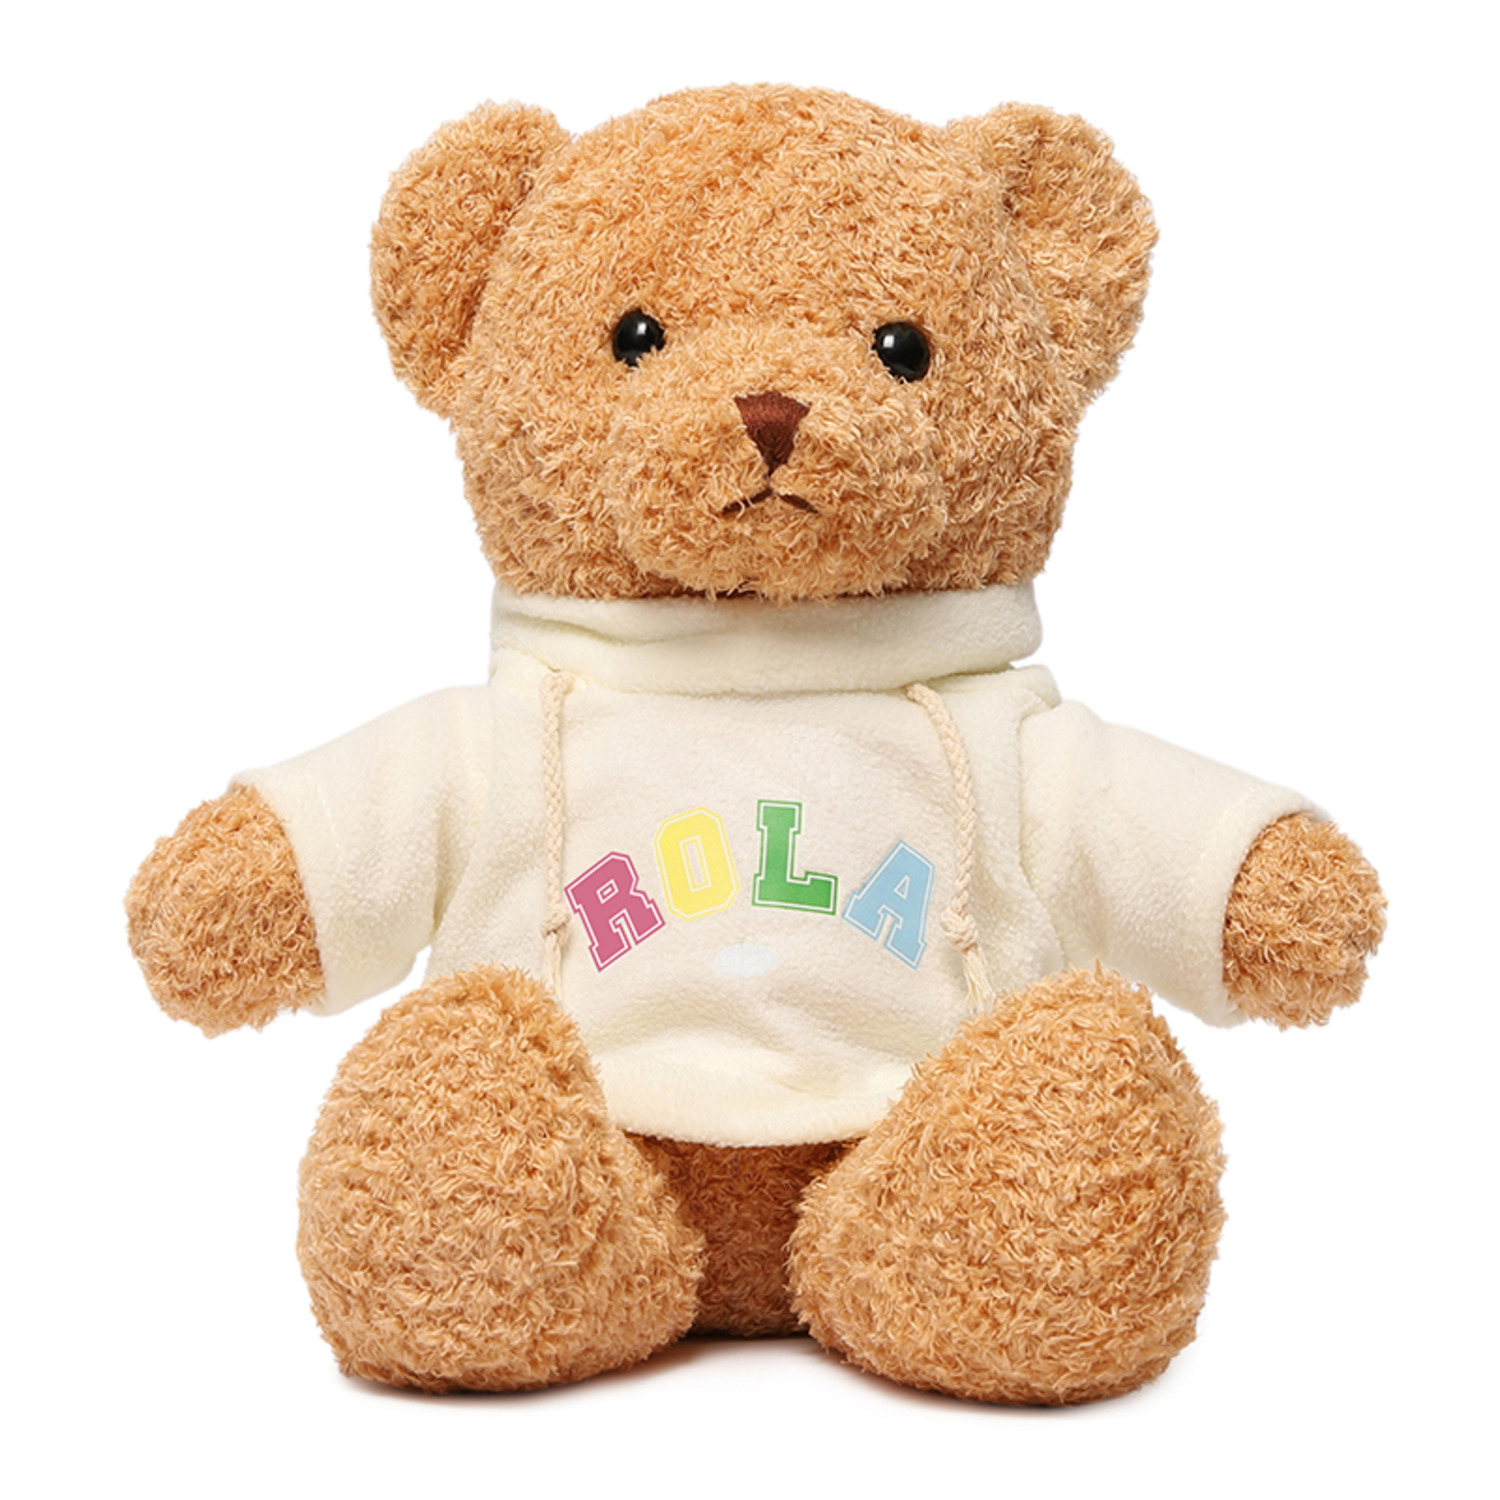 生日礼物搭配可爱小泰迪熊小朋友床上毛绒公仔玩偶礼品